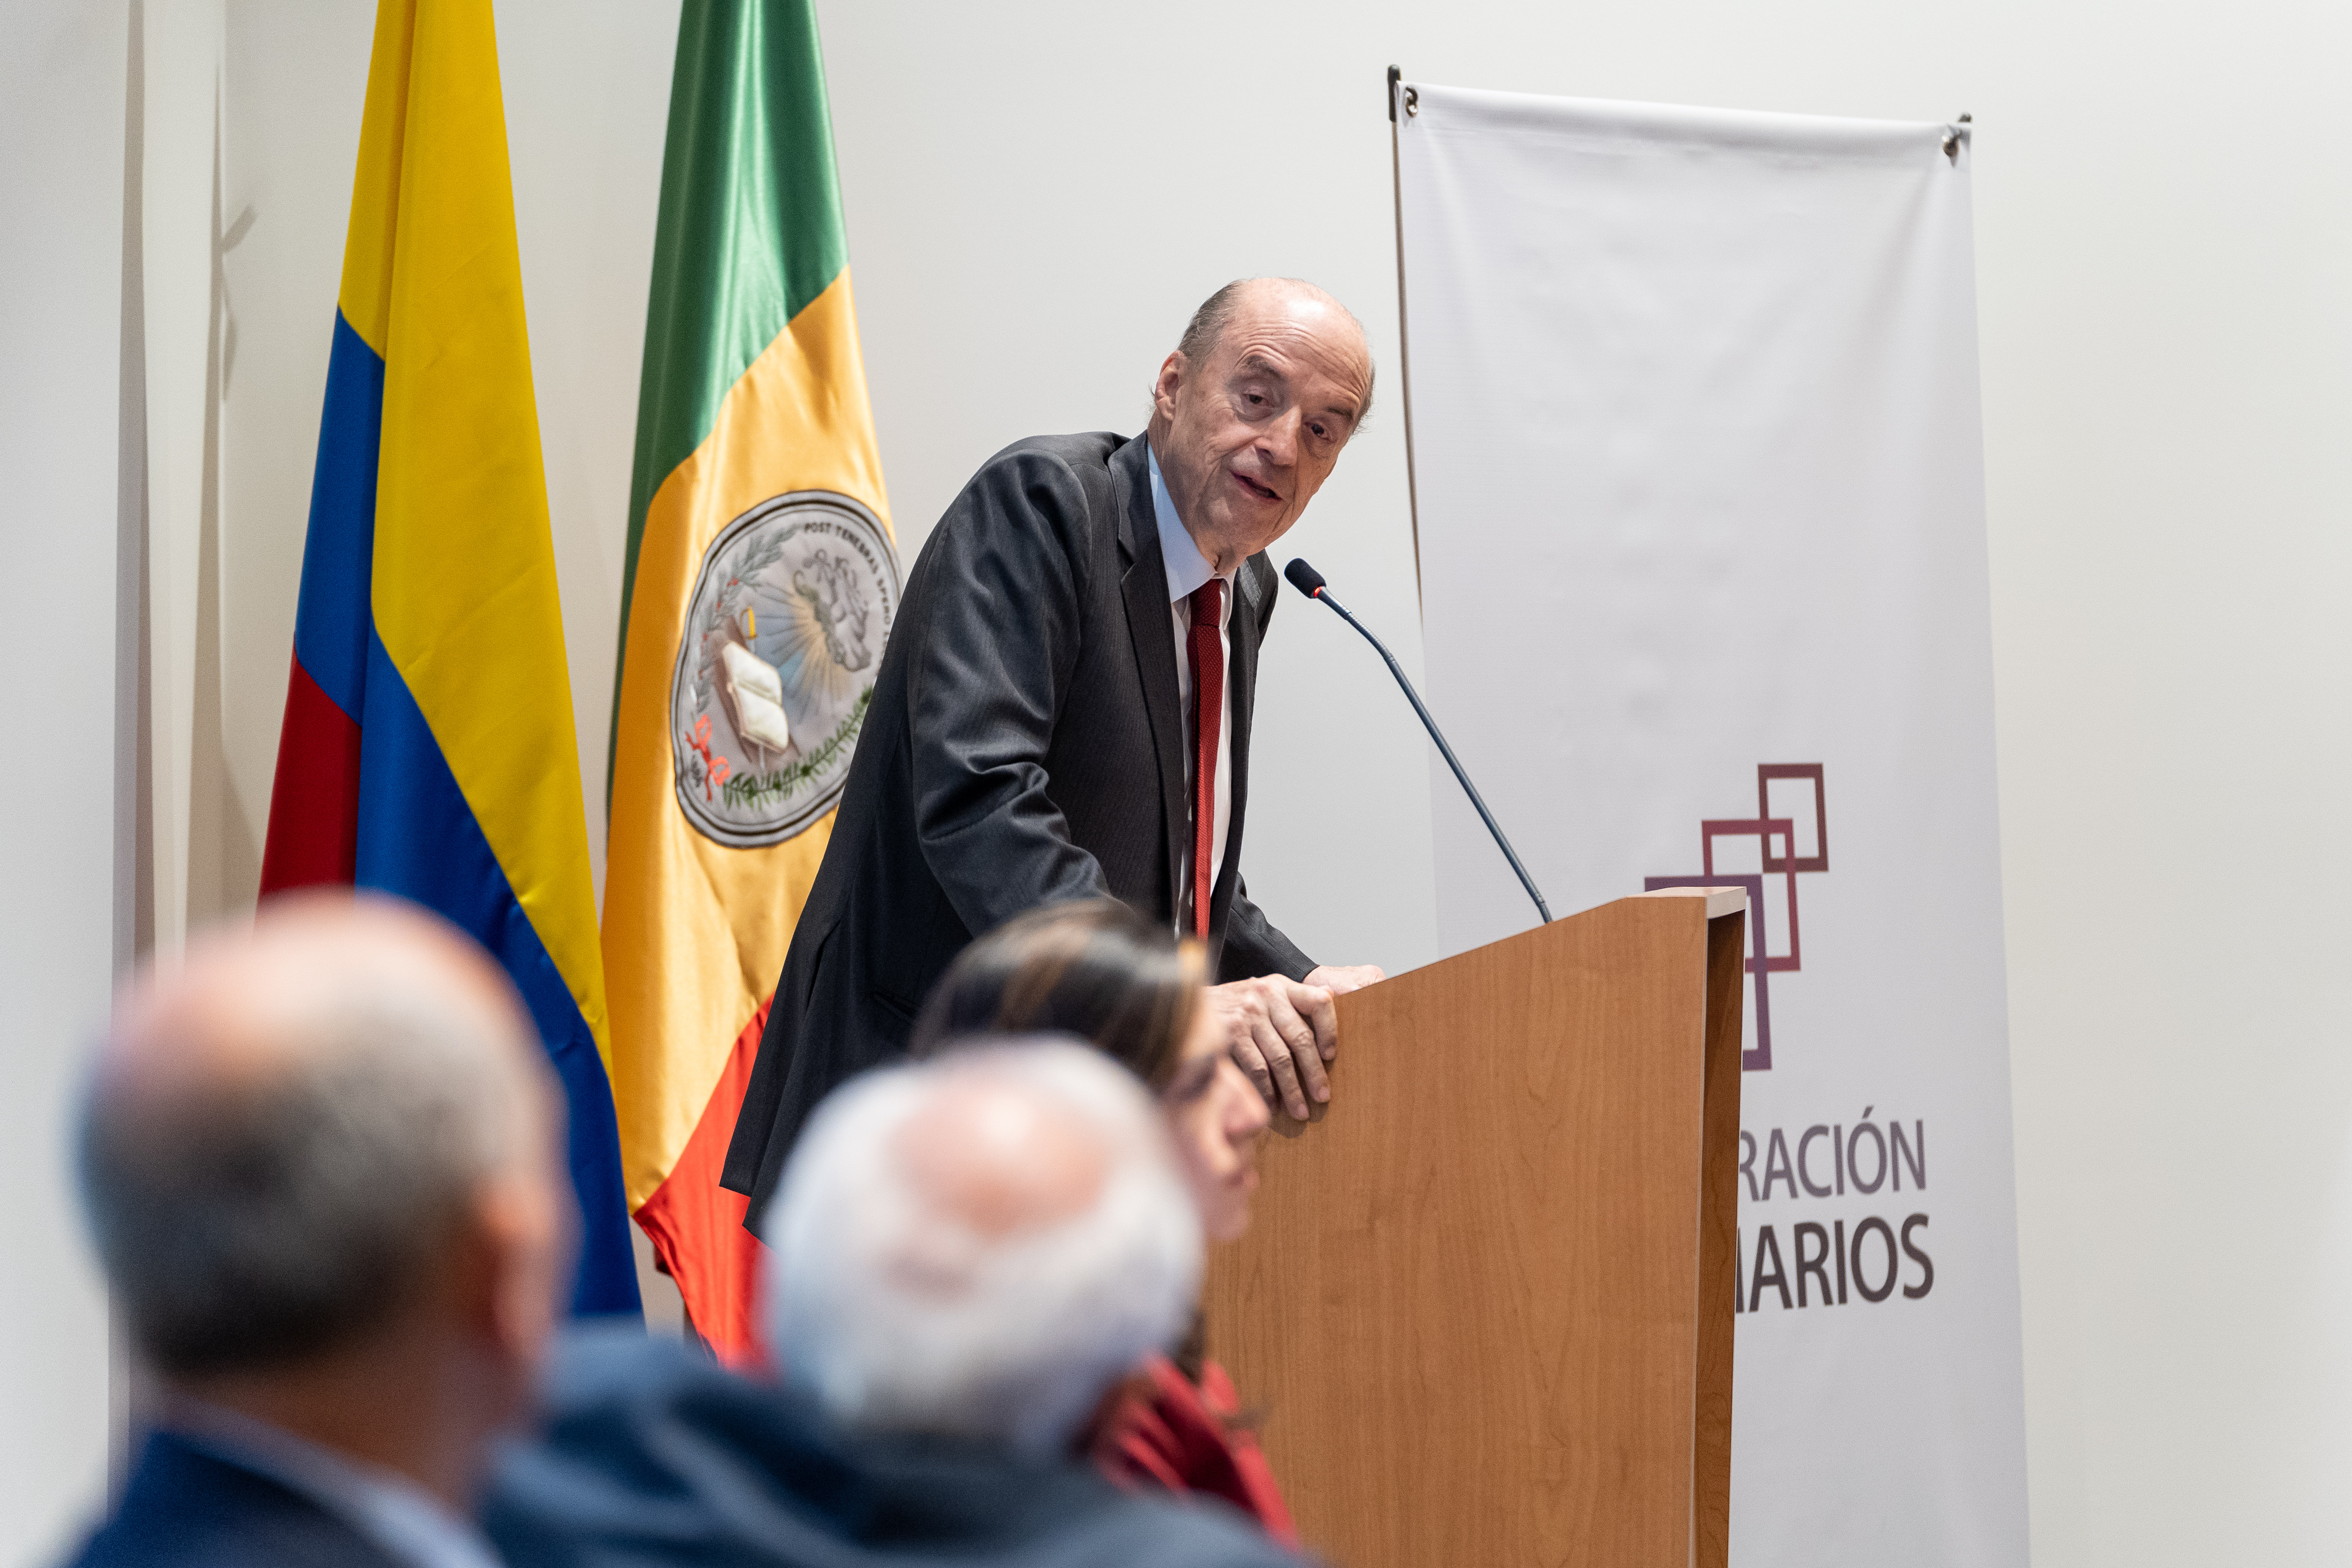 Canciller Álvaro Leyva Durán en evento de la Universidad Externado de Colombia